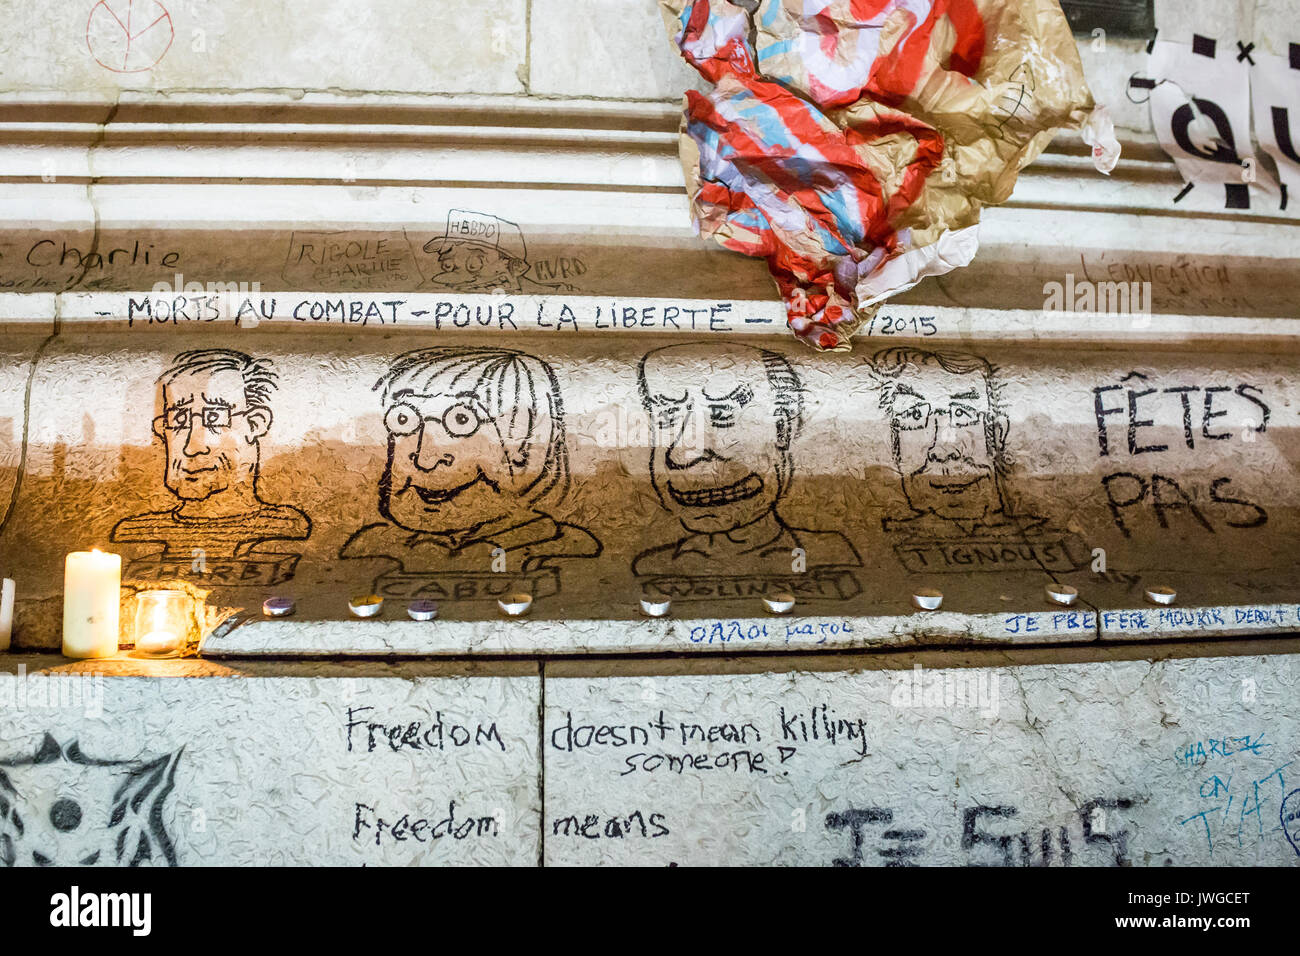 4 Portraits Zeichnungen von cabu charb, tignous wolinski. Hommage an die Opfer von Charlie Hebdo Tötung in Paris der 7. Januar 2015. Stockfoto